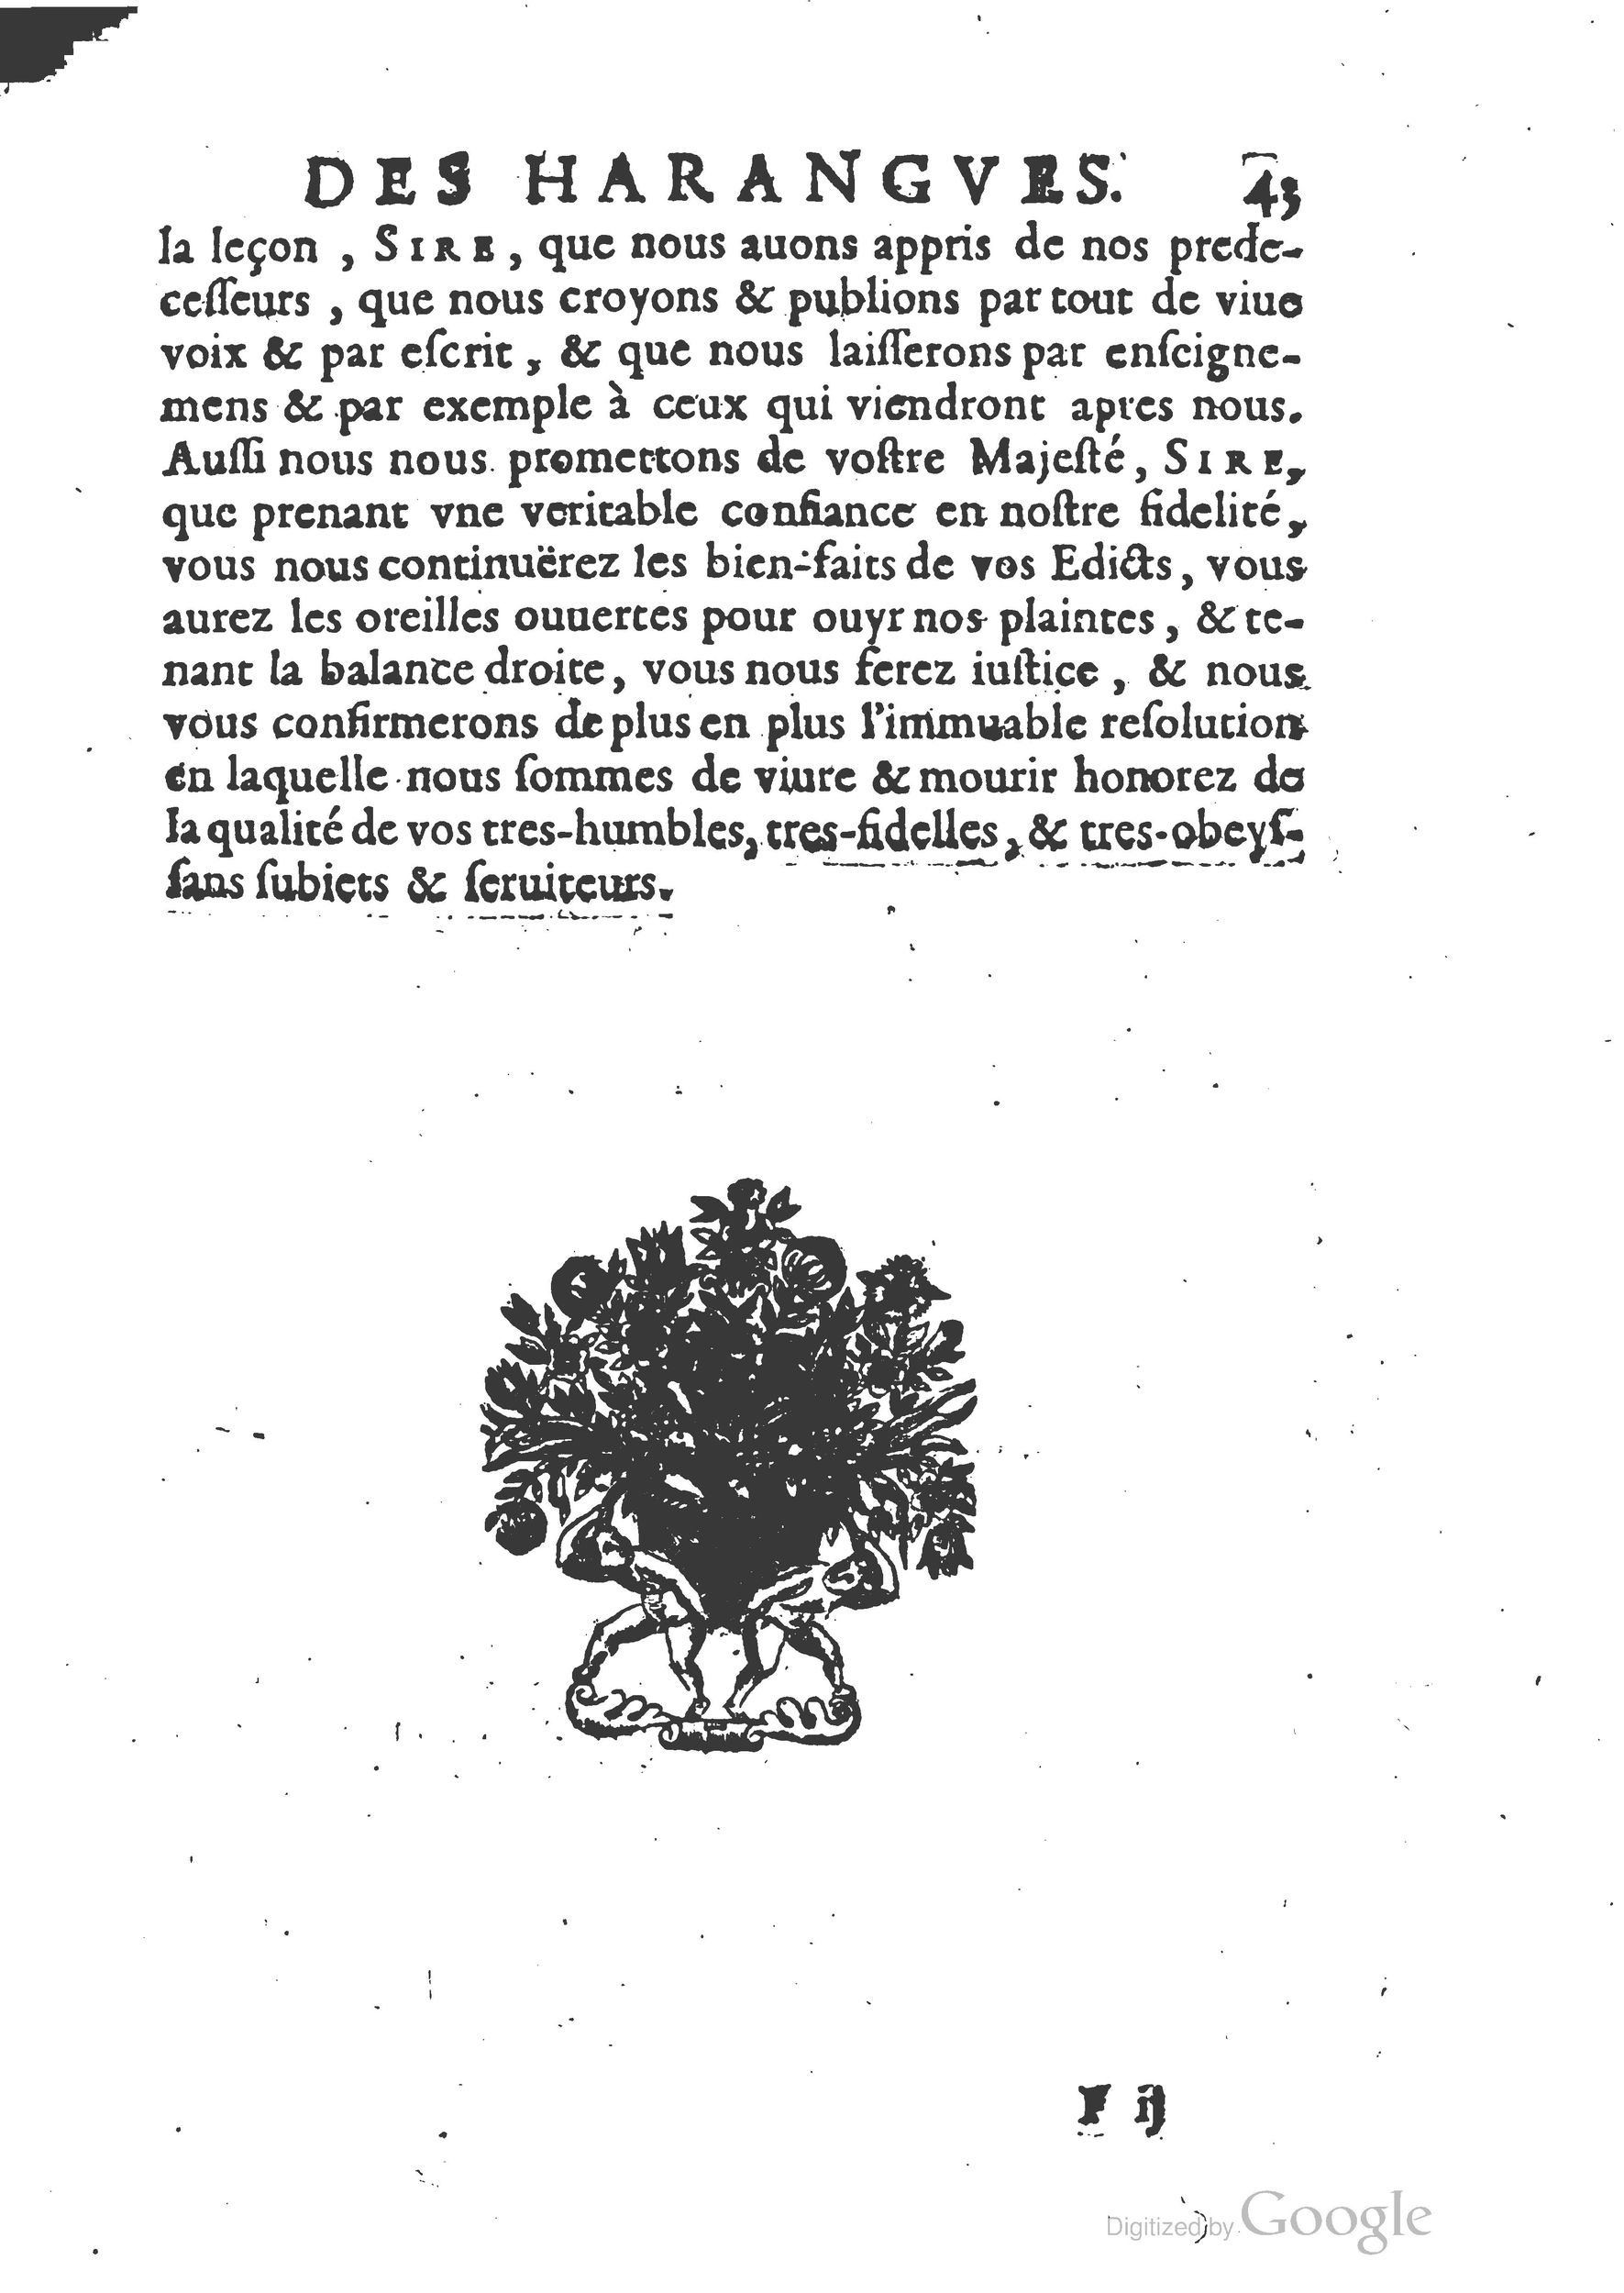 1654 Trésor des harangues, remontrances et oraisons funèbres Robin_BM Lyon_Page_062.jpg